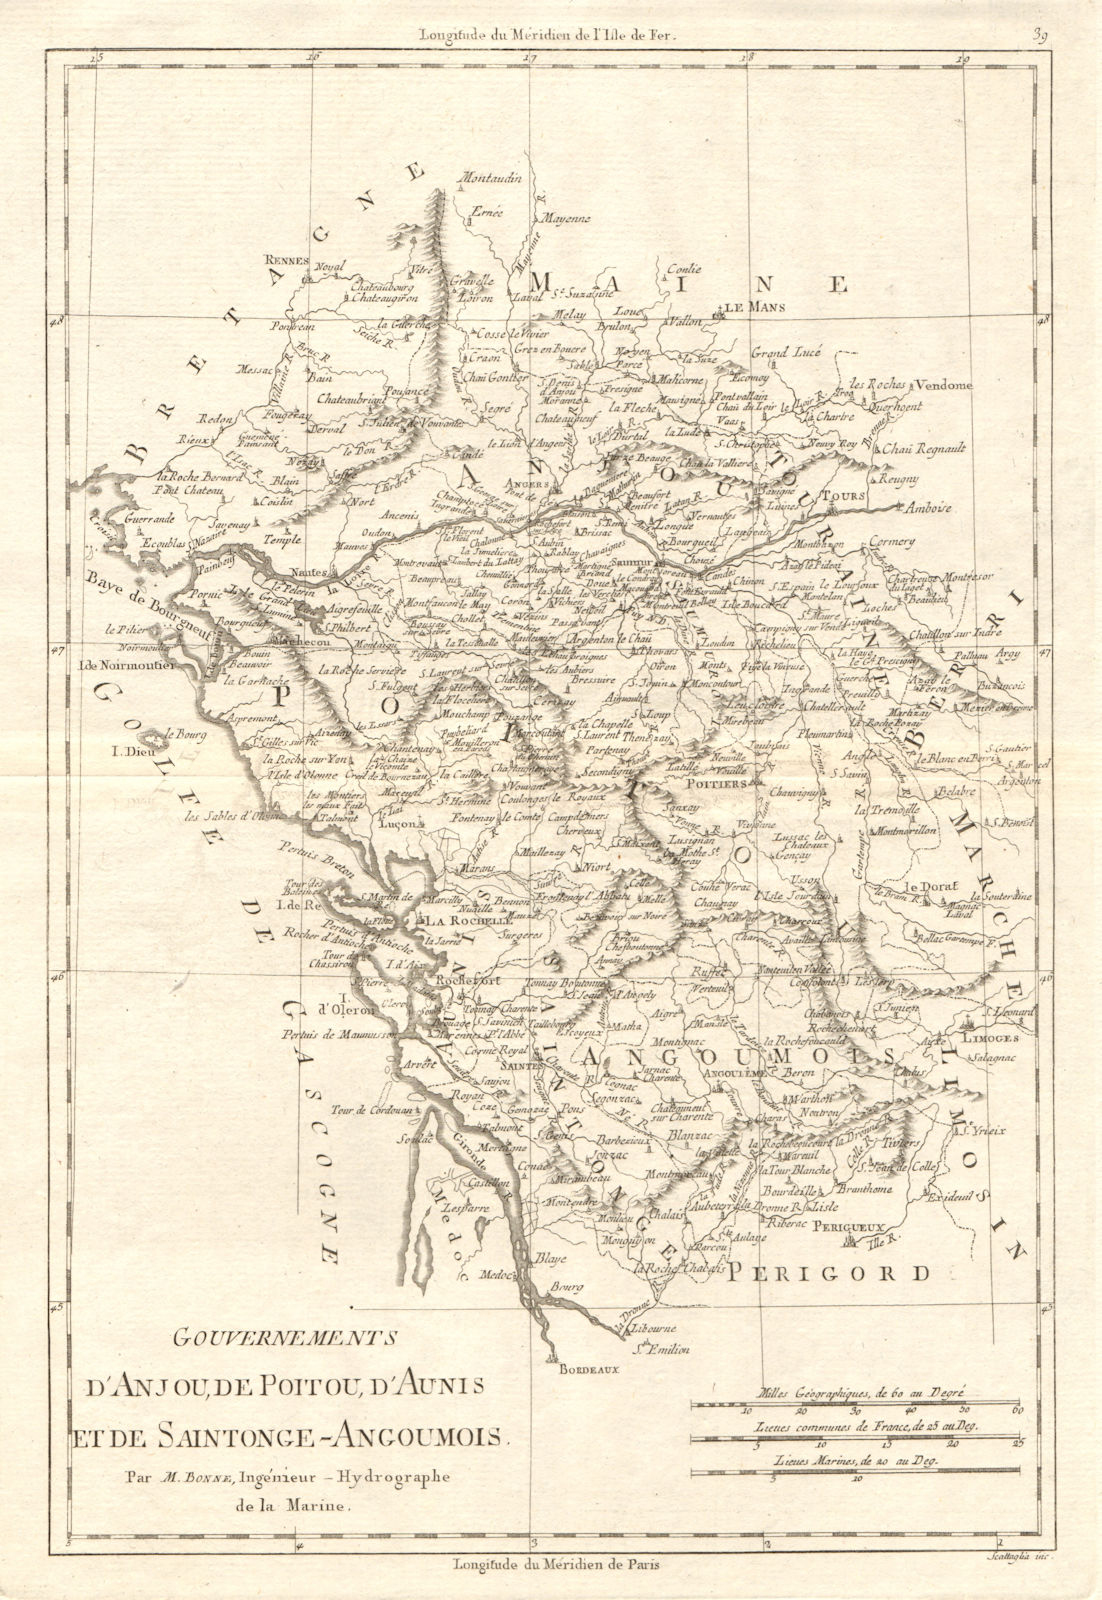 Associate Product Gouvernements d’Anjou, de Poitou, d’Aunis & Saintonge-Angoumois. BONNE 1789 map